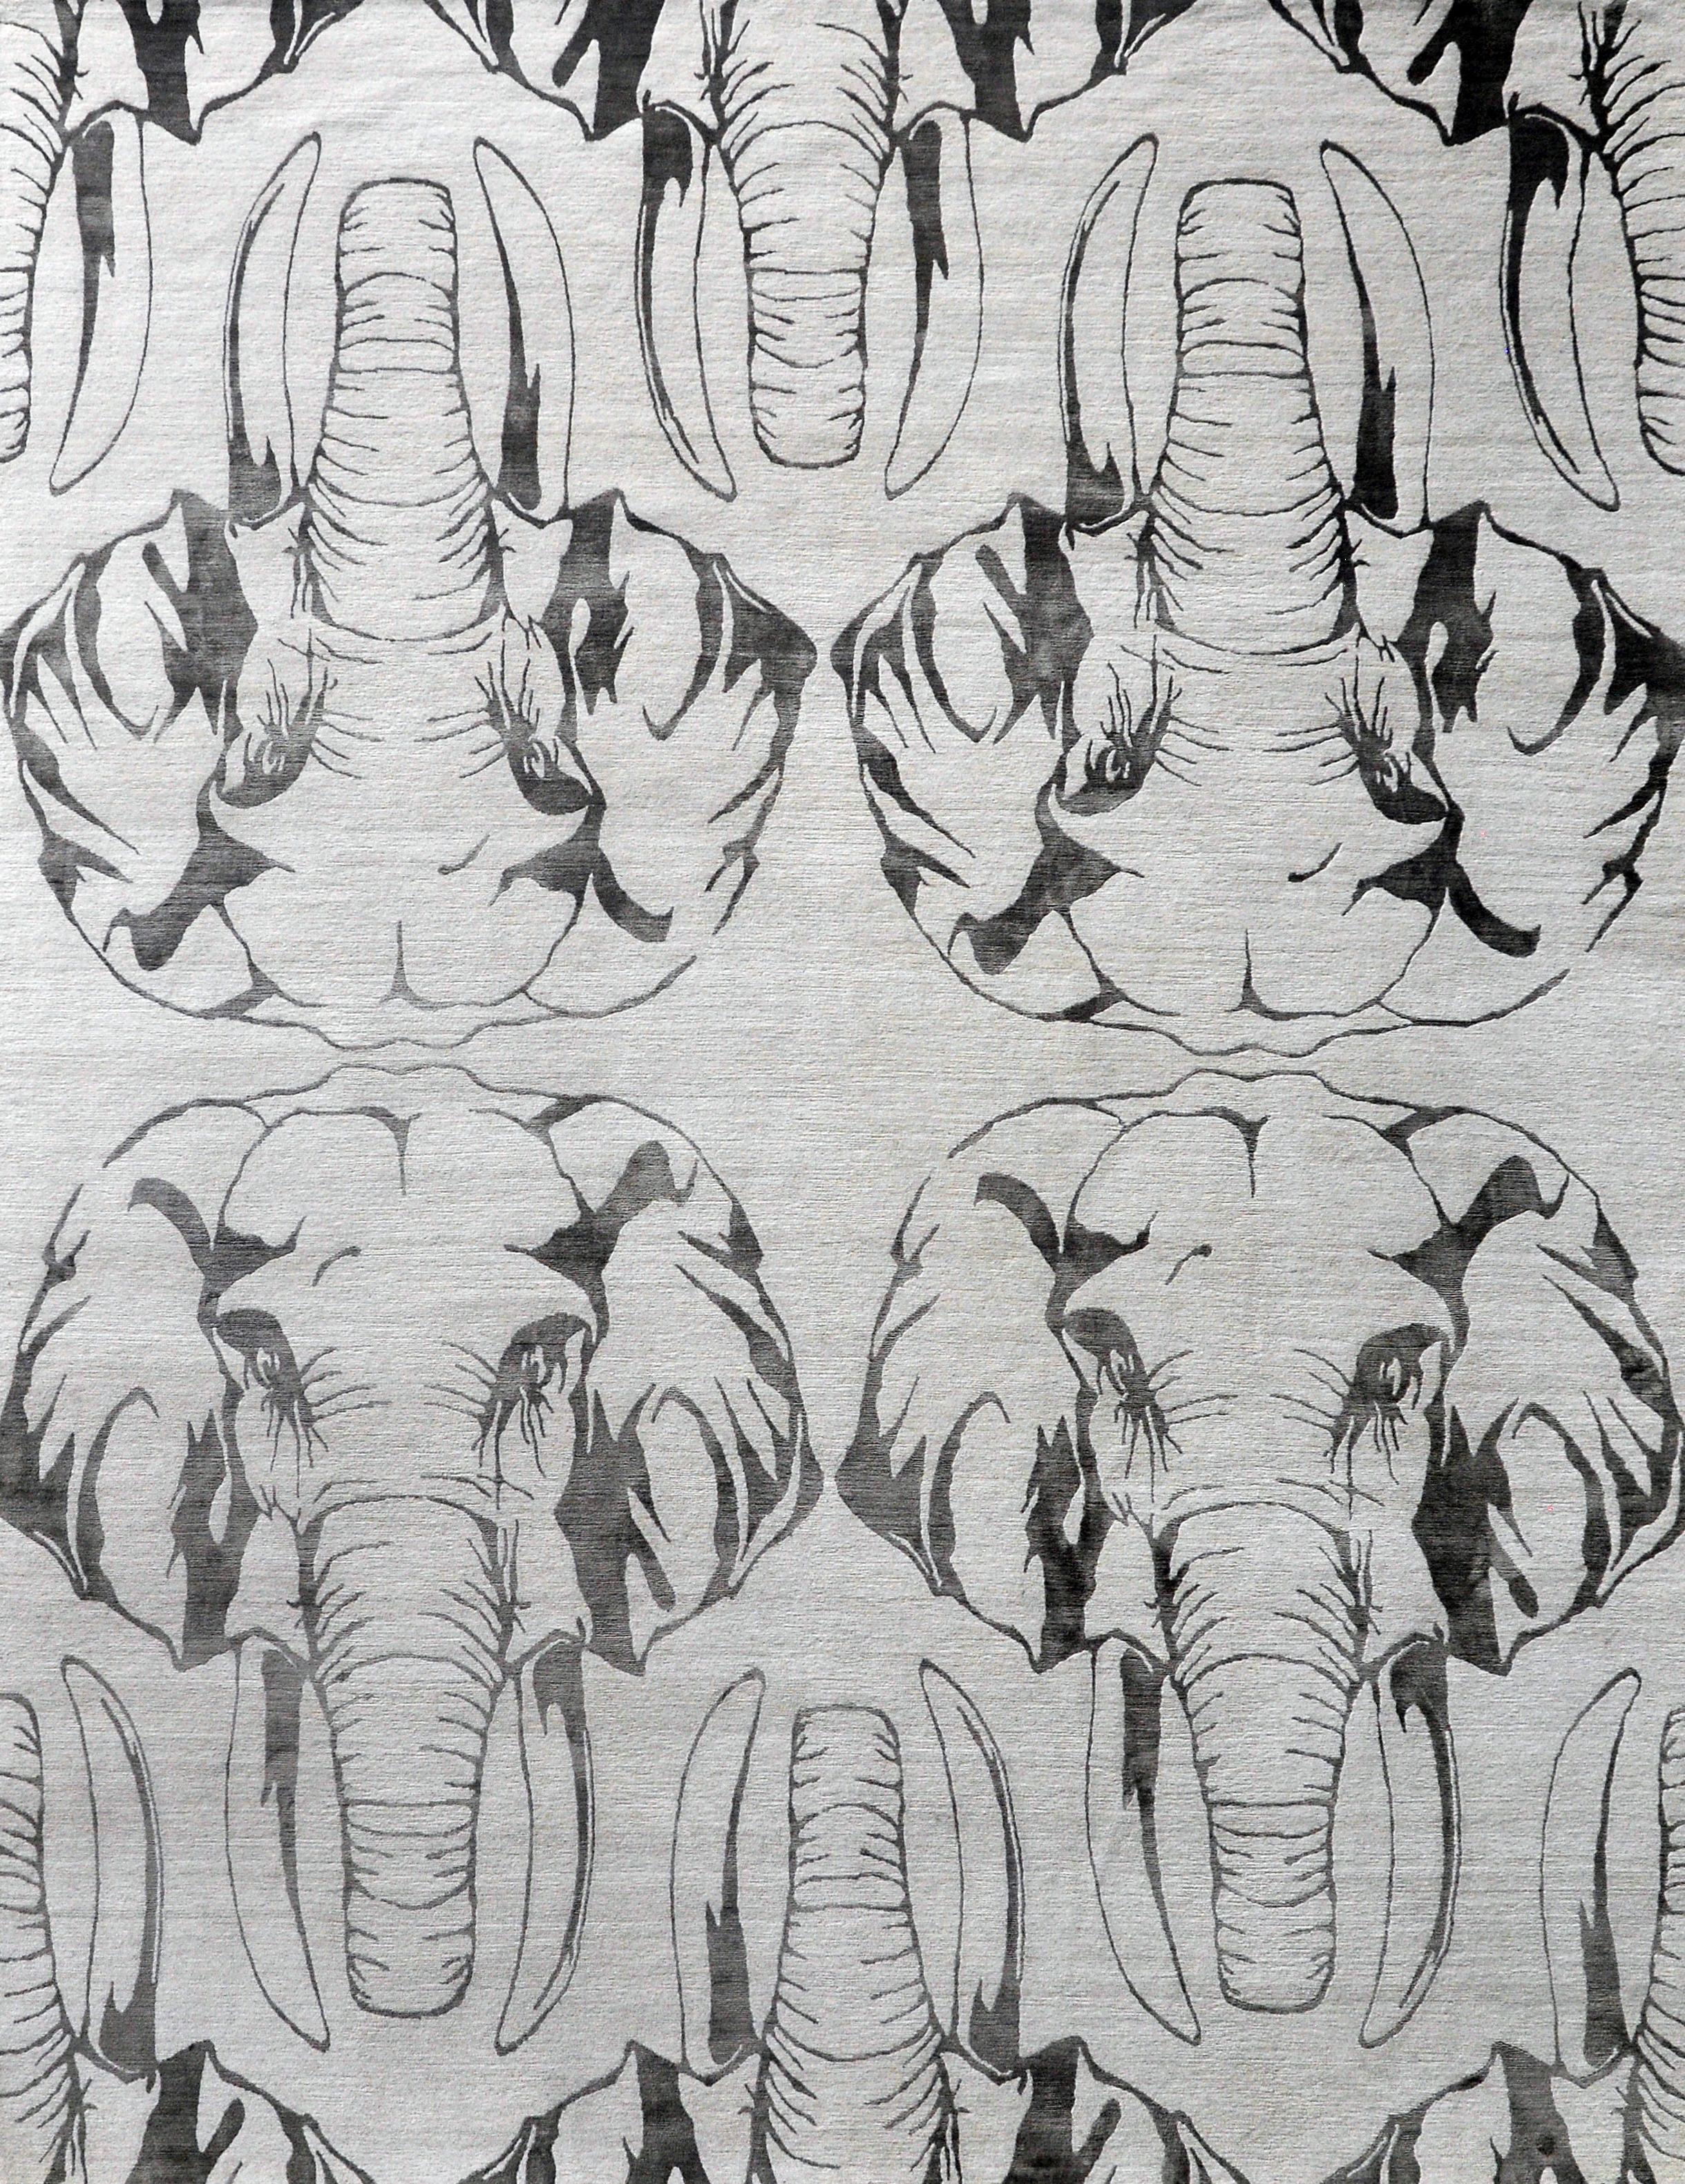 Fabriqué avec un art méticuleux, ce tapis enchanteur présente un arrangement captivant d'éléphants. Délicatement tissée à la main en soie fine, la représentation complexe met en scène les créatures majestueuses, avec leurs troncs et leurs touffes.